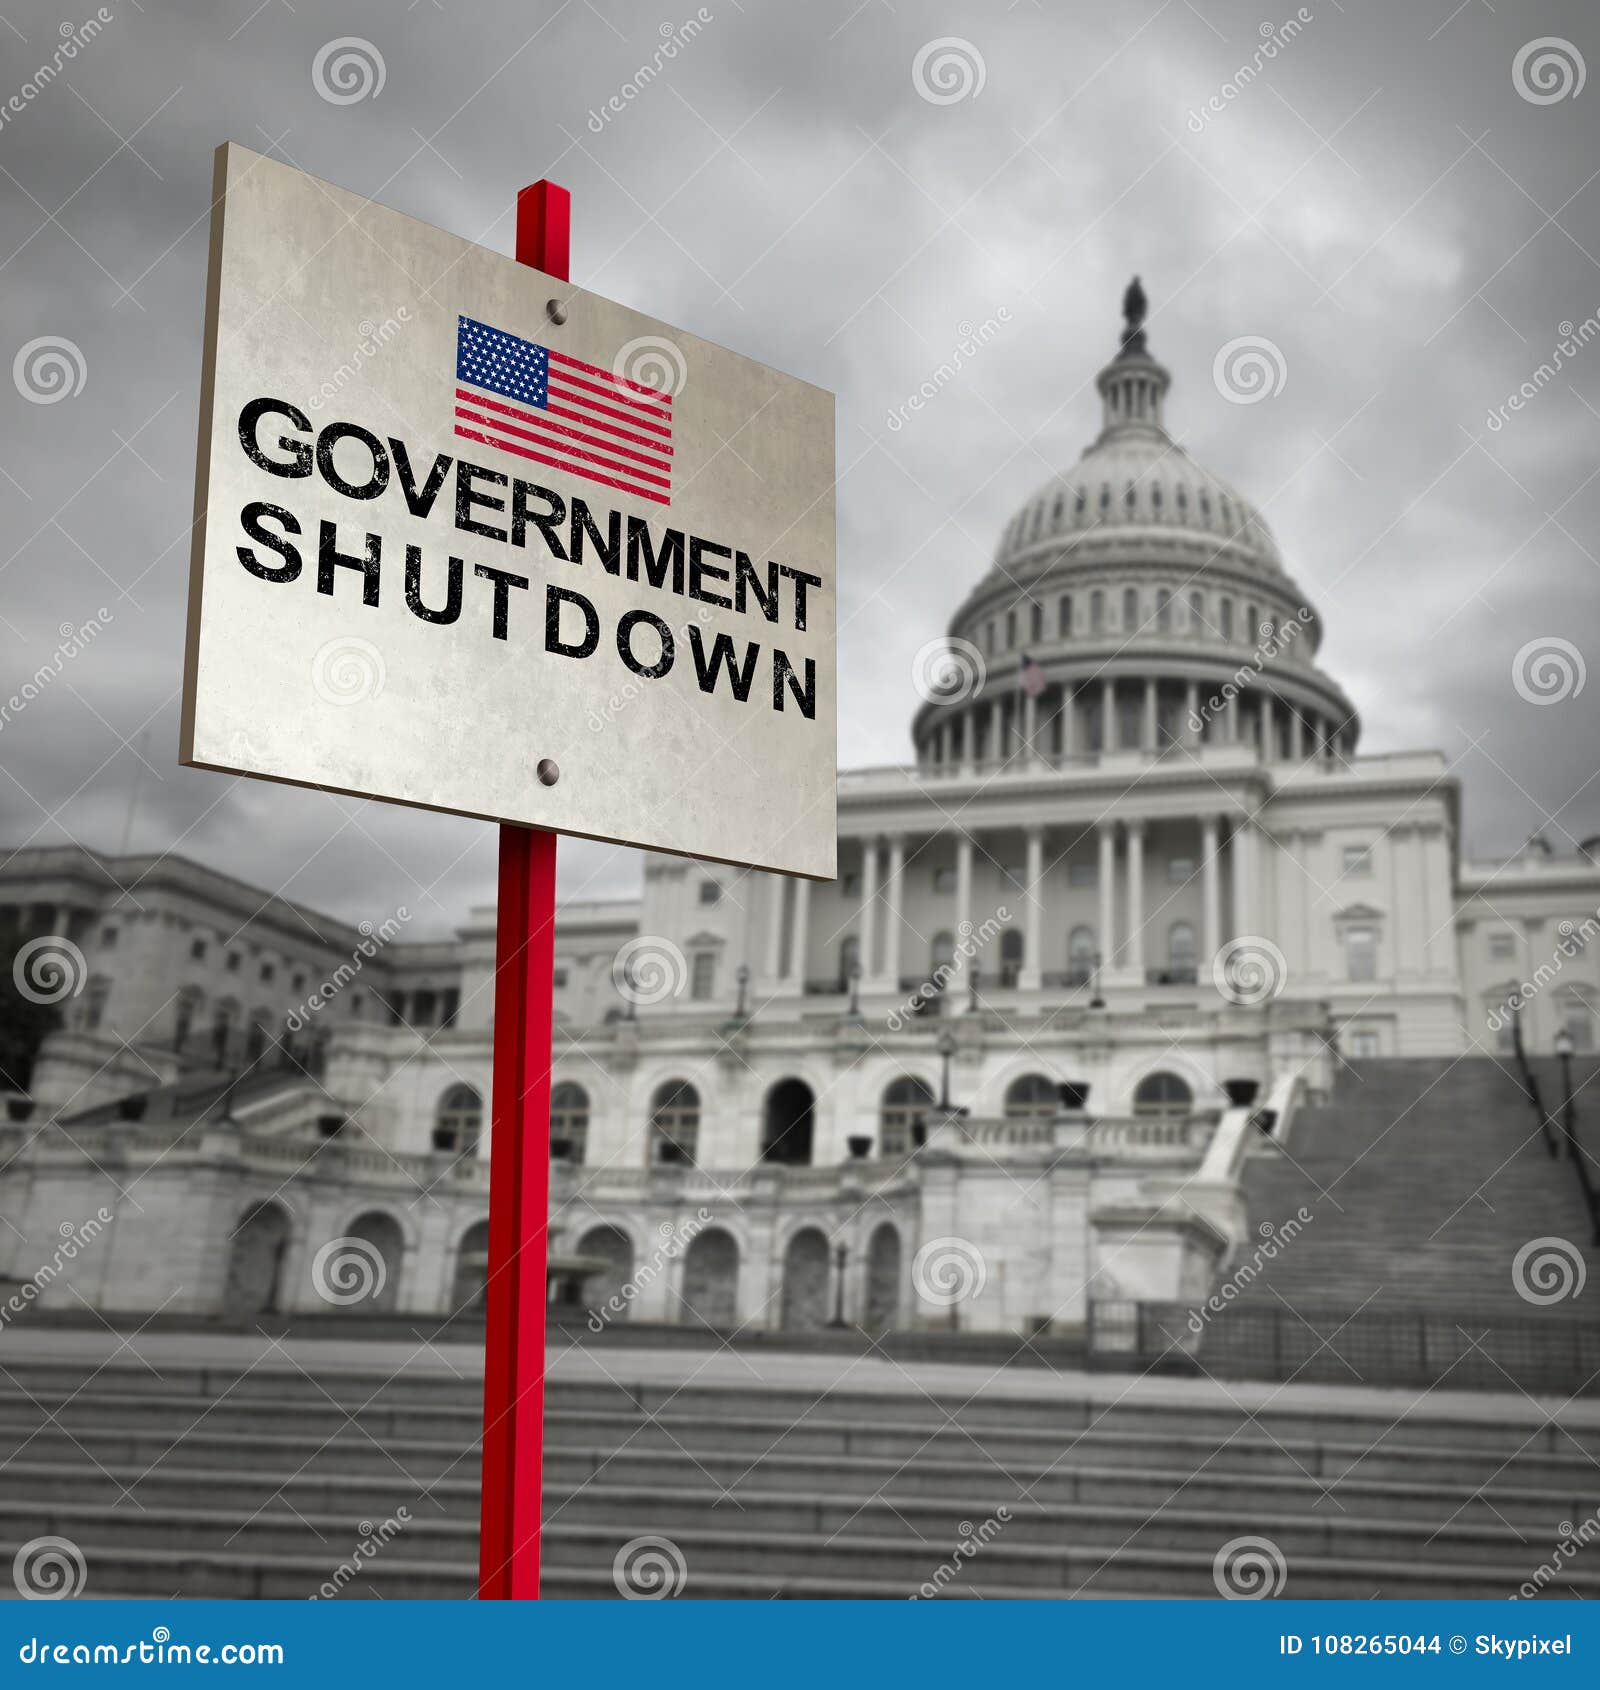 united states government shutdown